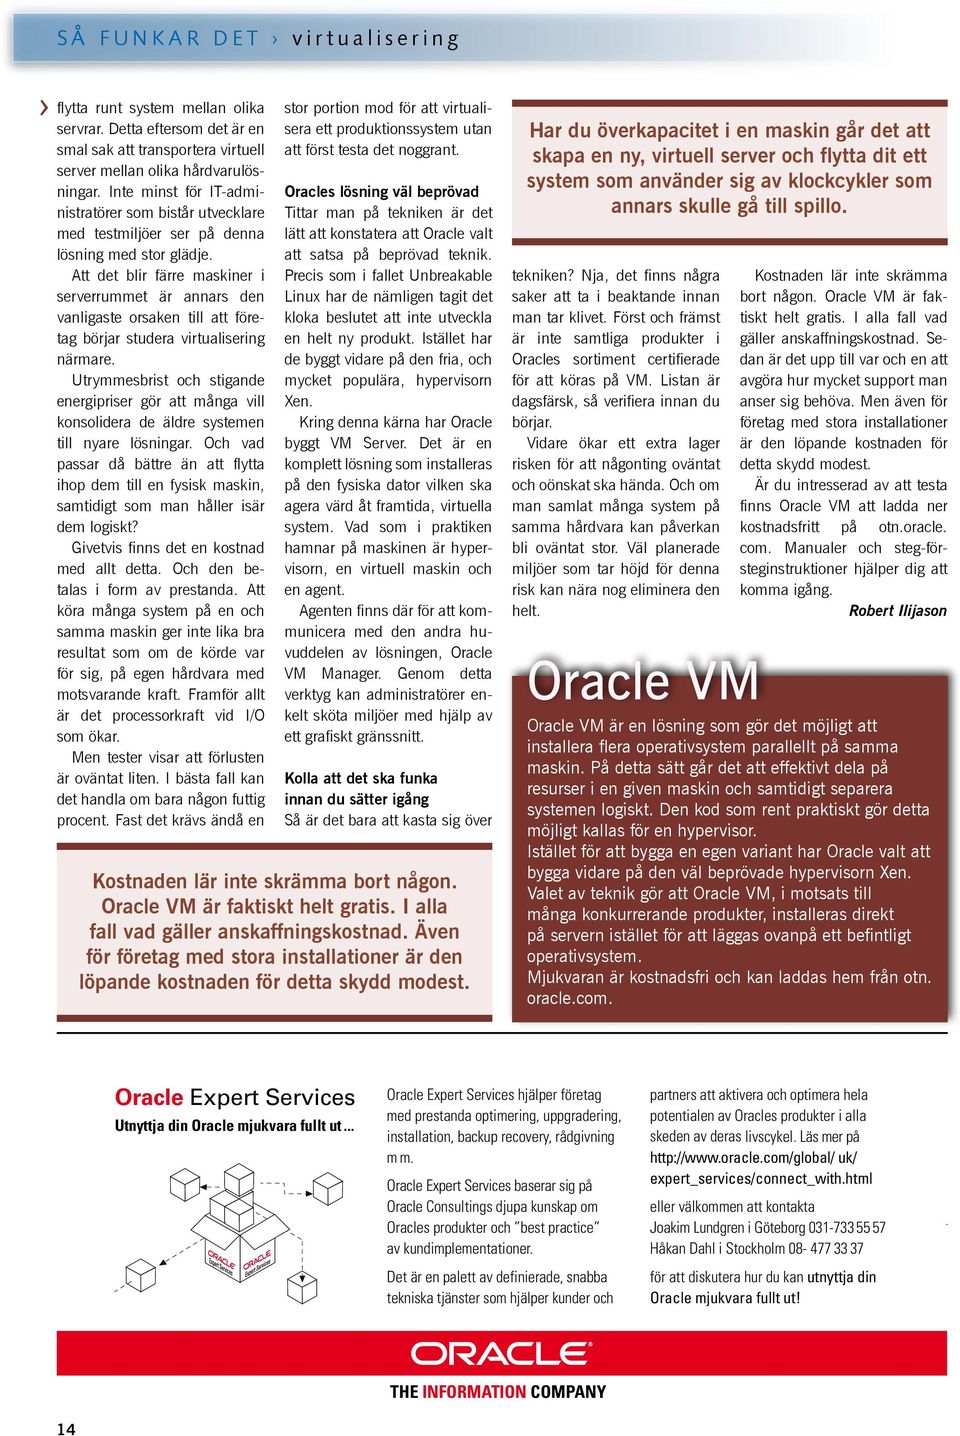 Inte minst för IT-administratörer som bistår utvecklare Tittar man på tekniken är det Oracles lösning väl beprövad med testmiljöer ser på denna lätt att konstatera att Oracle valt lösning med stor